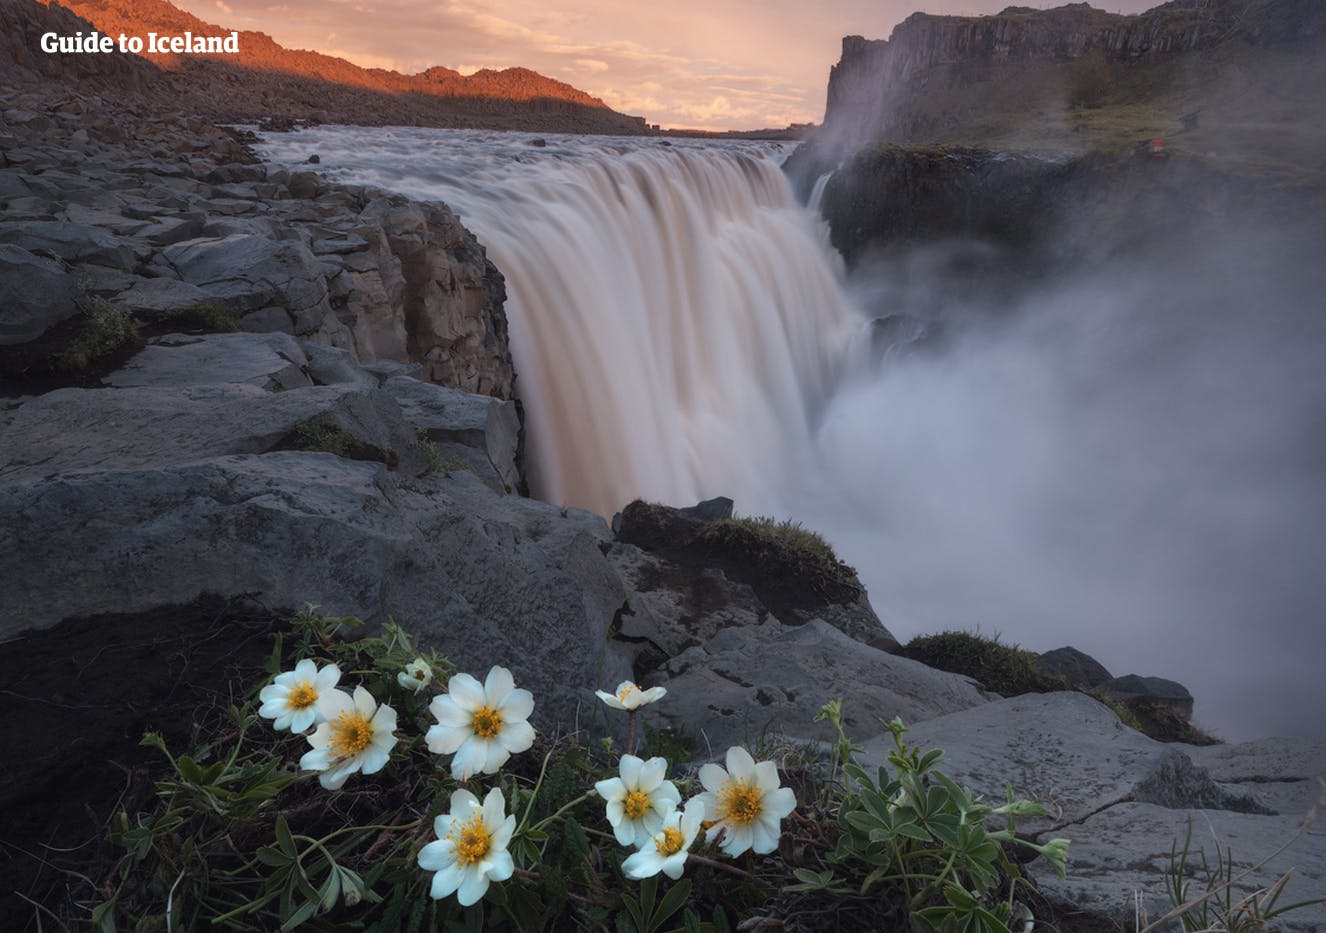 เดตติฟอสส์เป็นน้ำตกที่สวยงามและทรงพลังอย่างมากทางตอนเหนือของไอซ์แลนด์